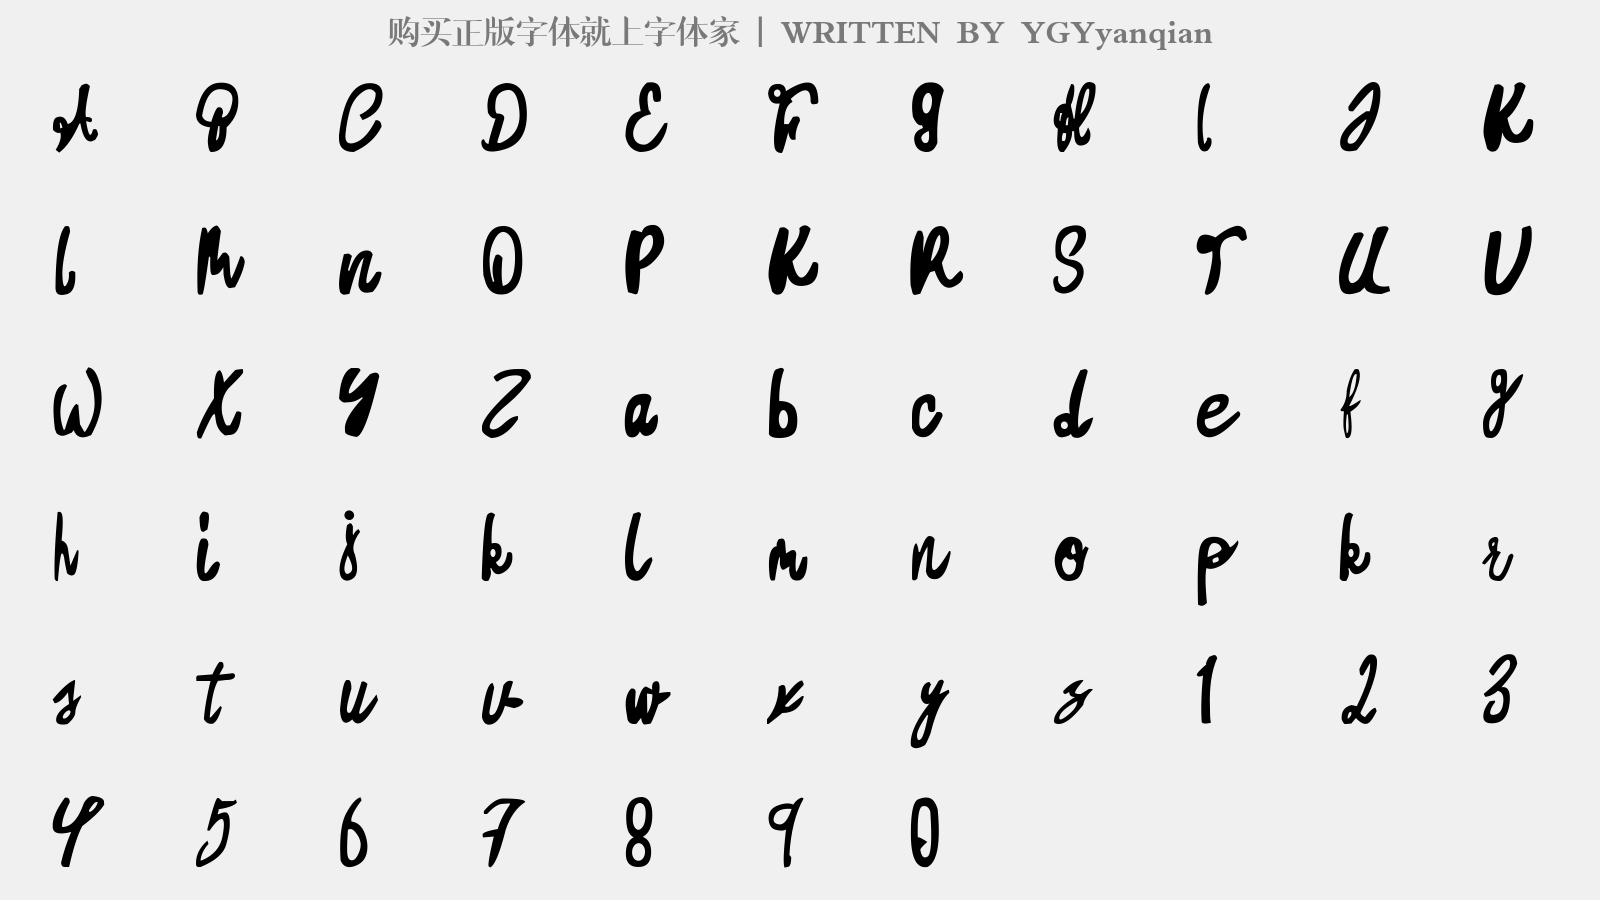 YGYyanqian - 大写字母/小写字母/数字